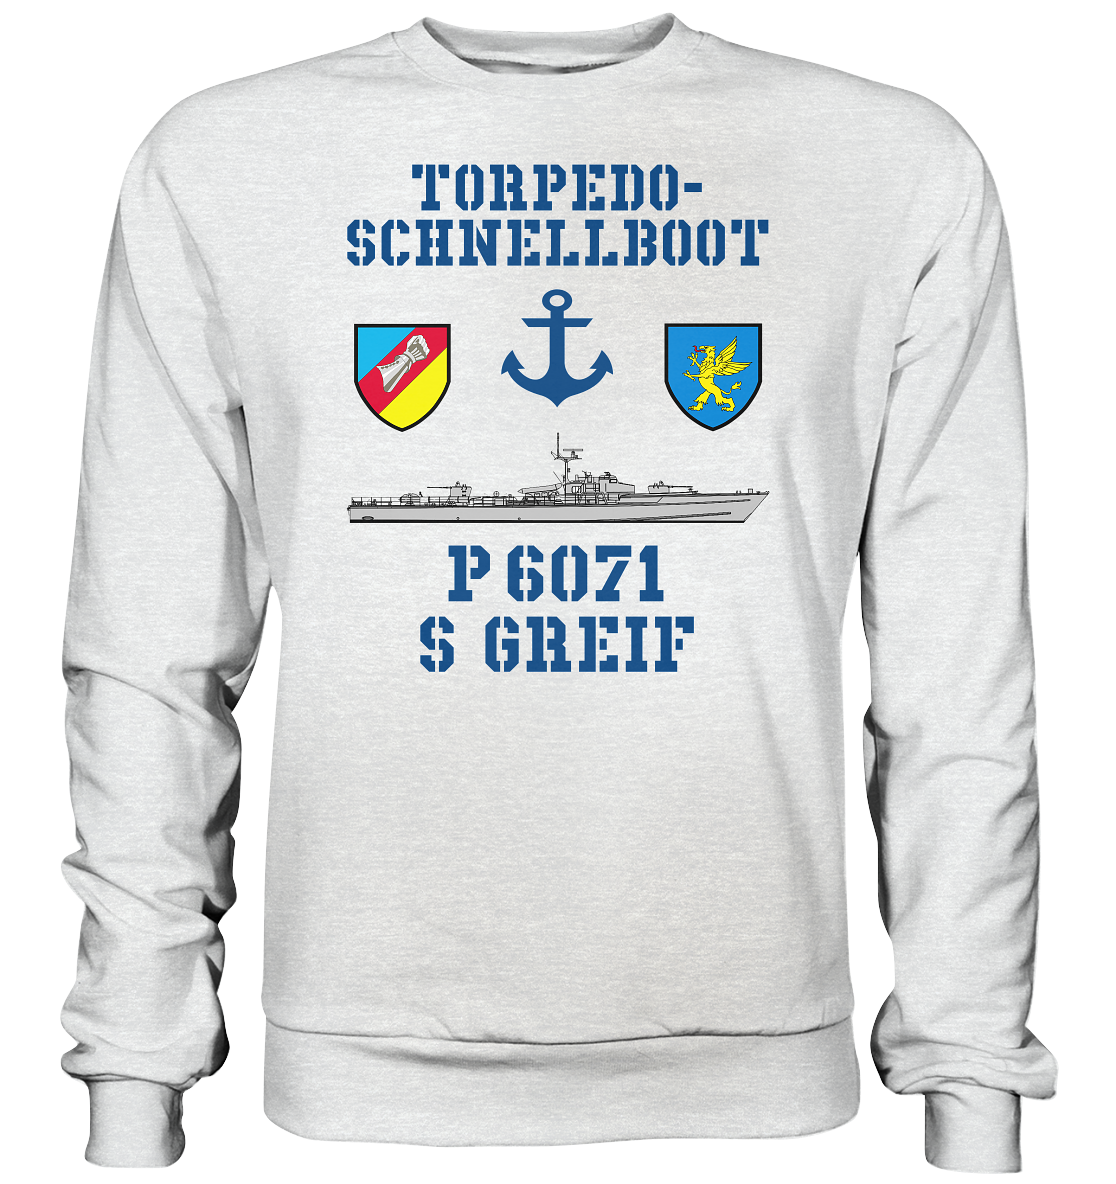 Torpedo-Schnellboot P6071 GREIF - Premium Sweatshirt